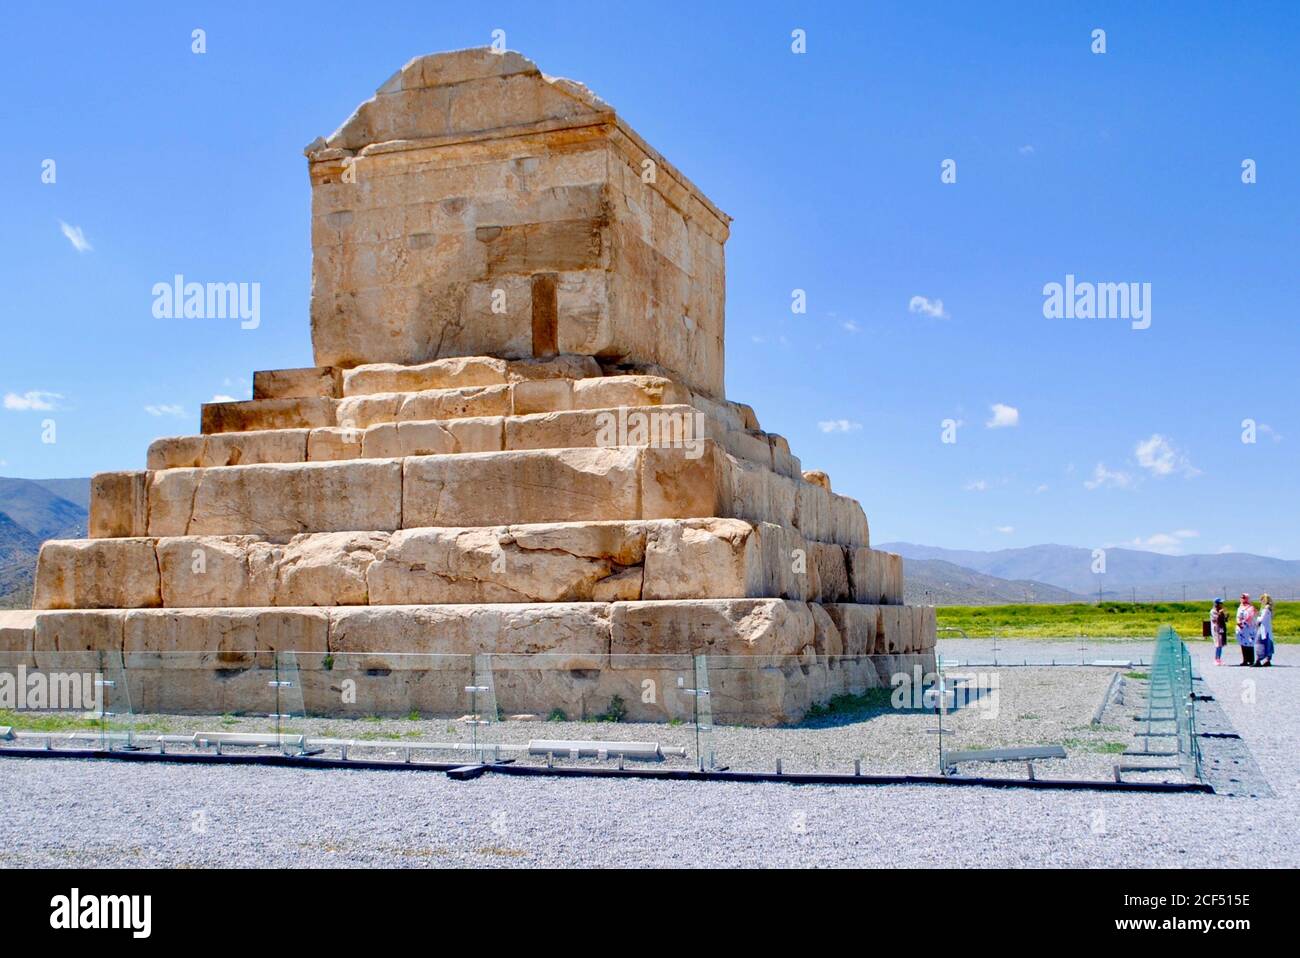 Touristen besuchen das Grab von Kyros dem Großen, dem König des Ersten Persischen Reiches. Unesco-Weltkulturerbe. Pasargadae Iran Stockfoto